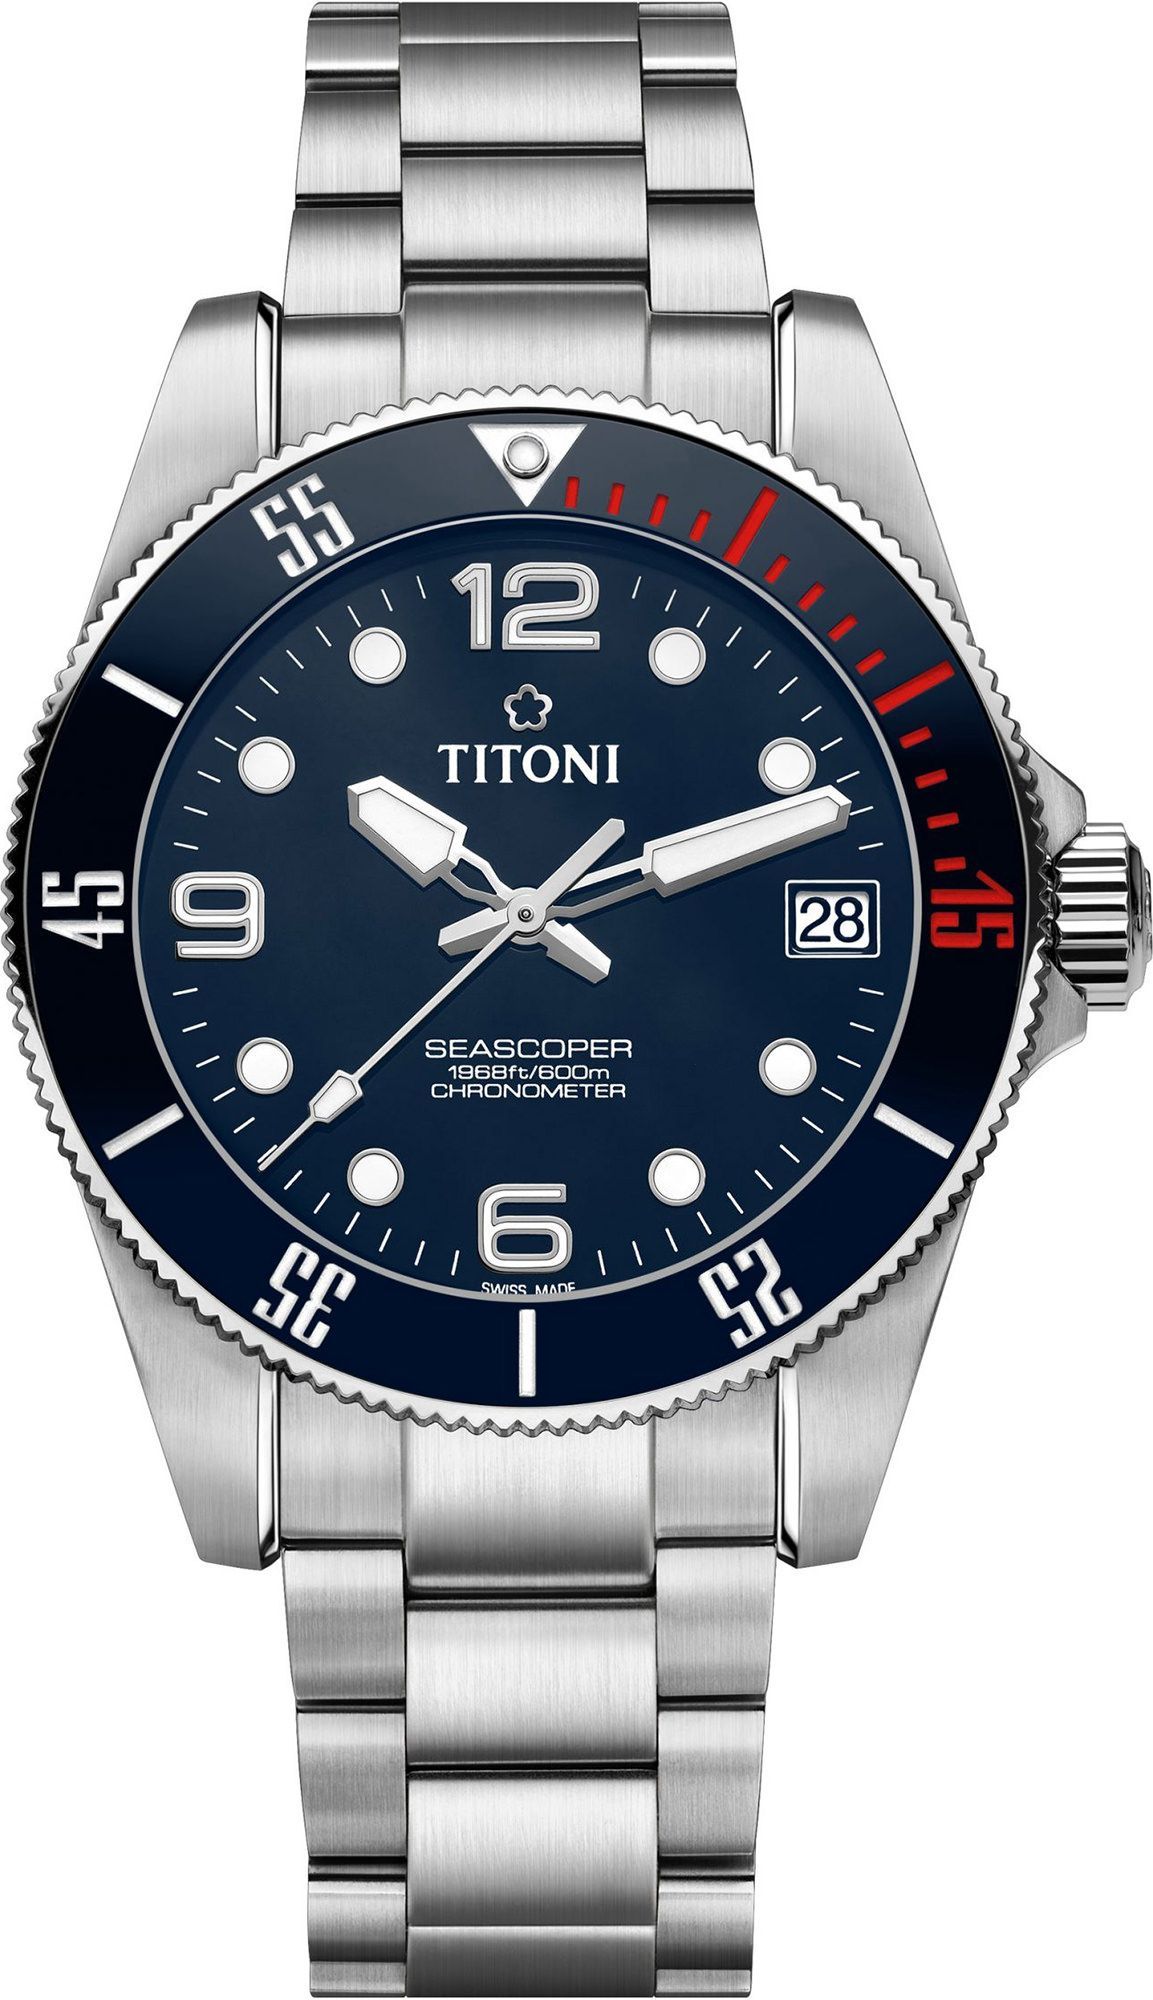 Titoni Seascoper 600 42 mm Watch in Blue Dial For Men - 1